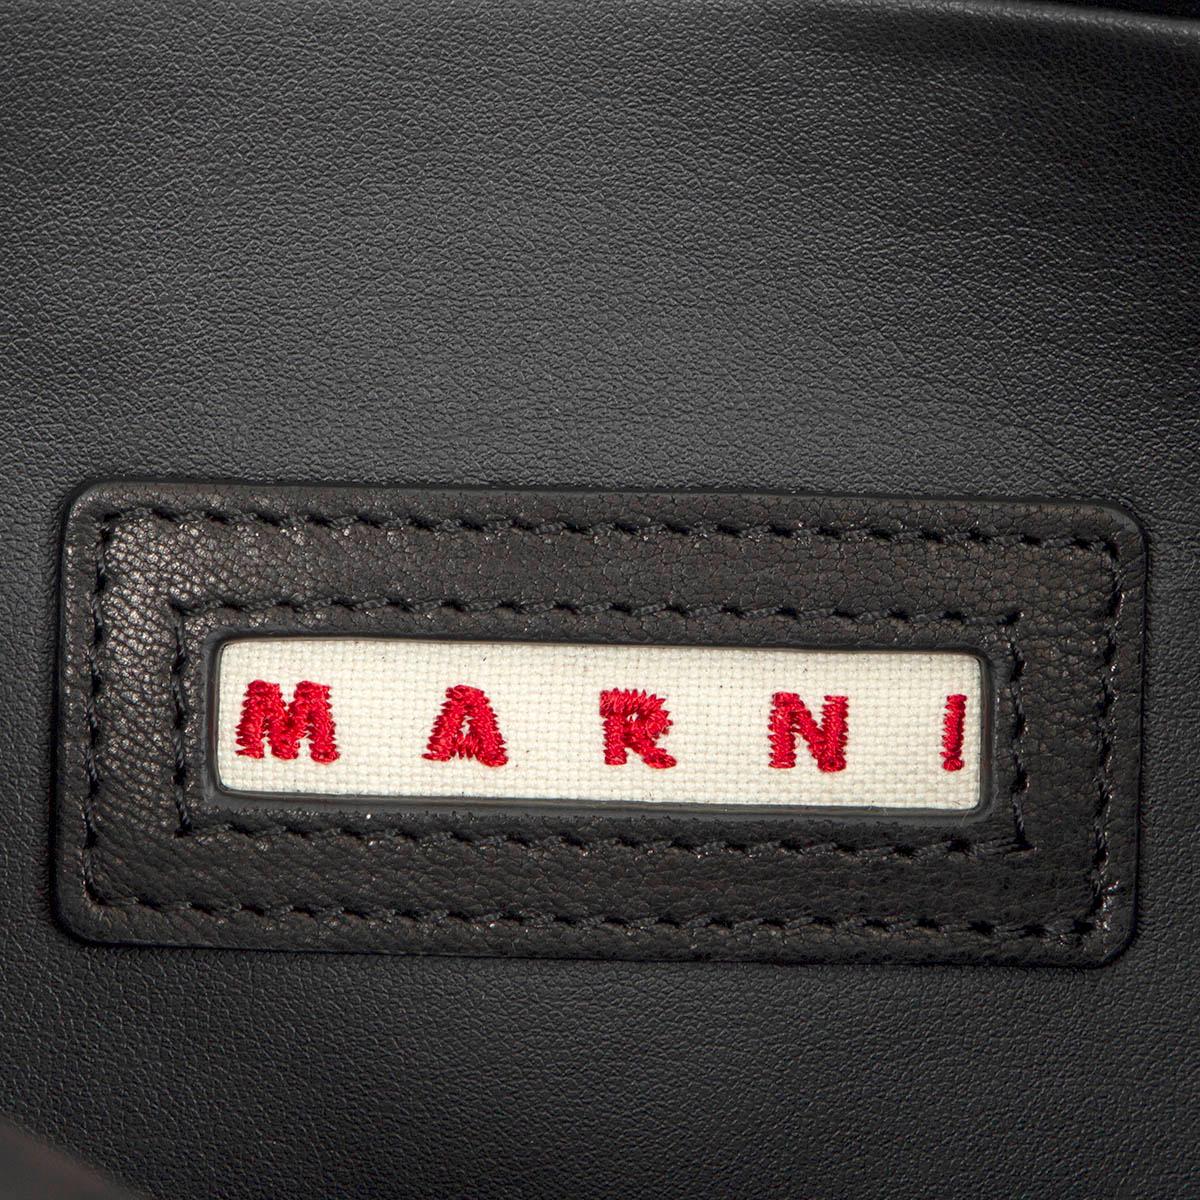 Black MARNI black leather SOFT TRUNK LARGE Shoulder Bag